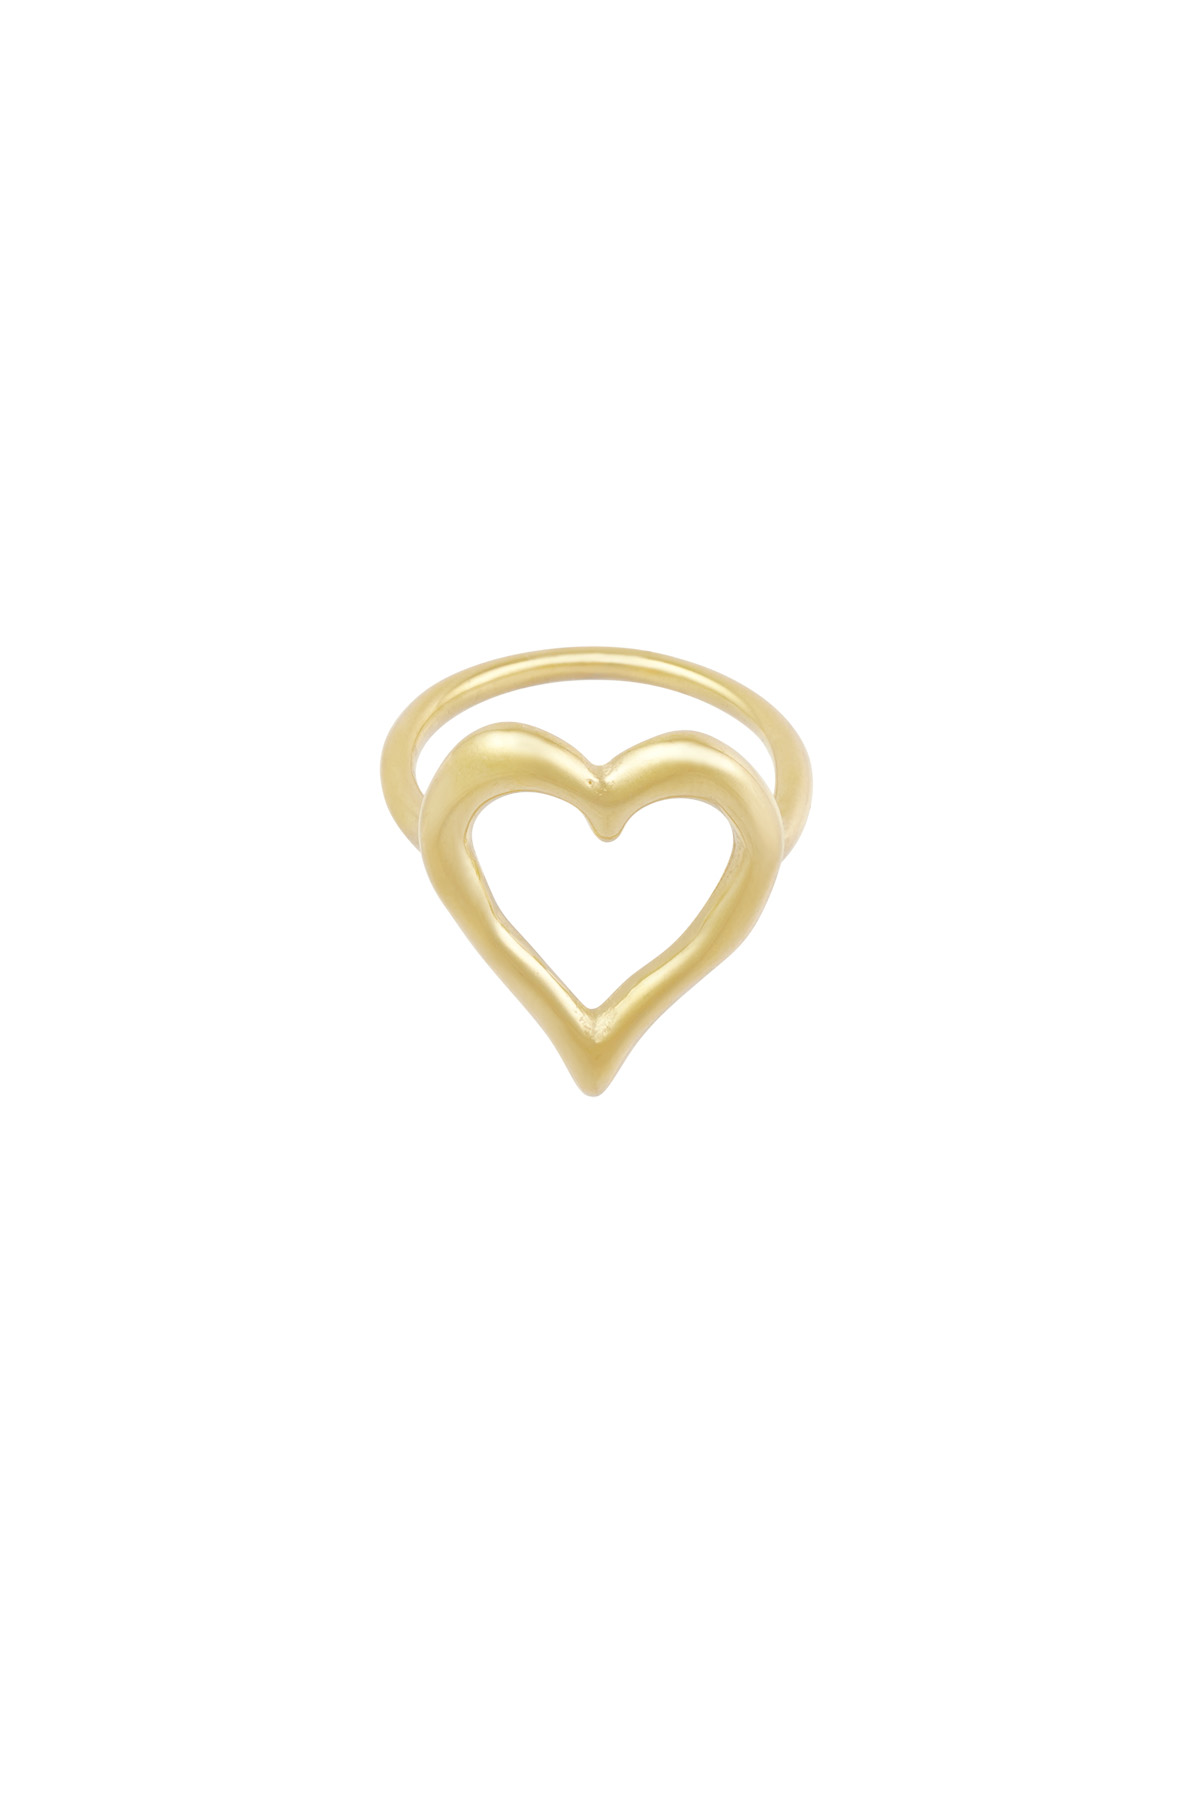 Yapılandırılmış kalp halkası - altın 16 